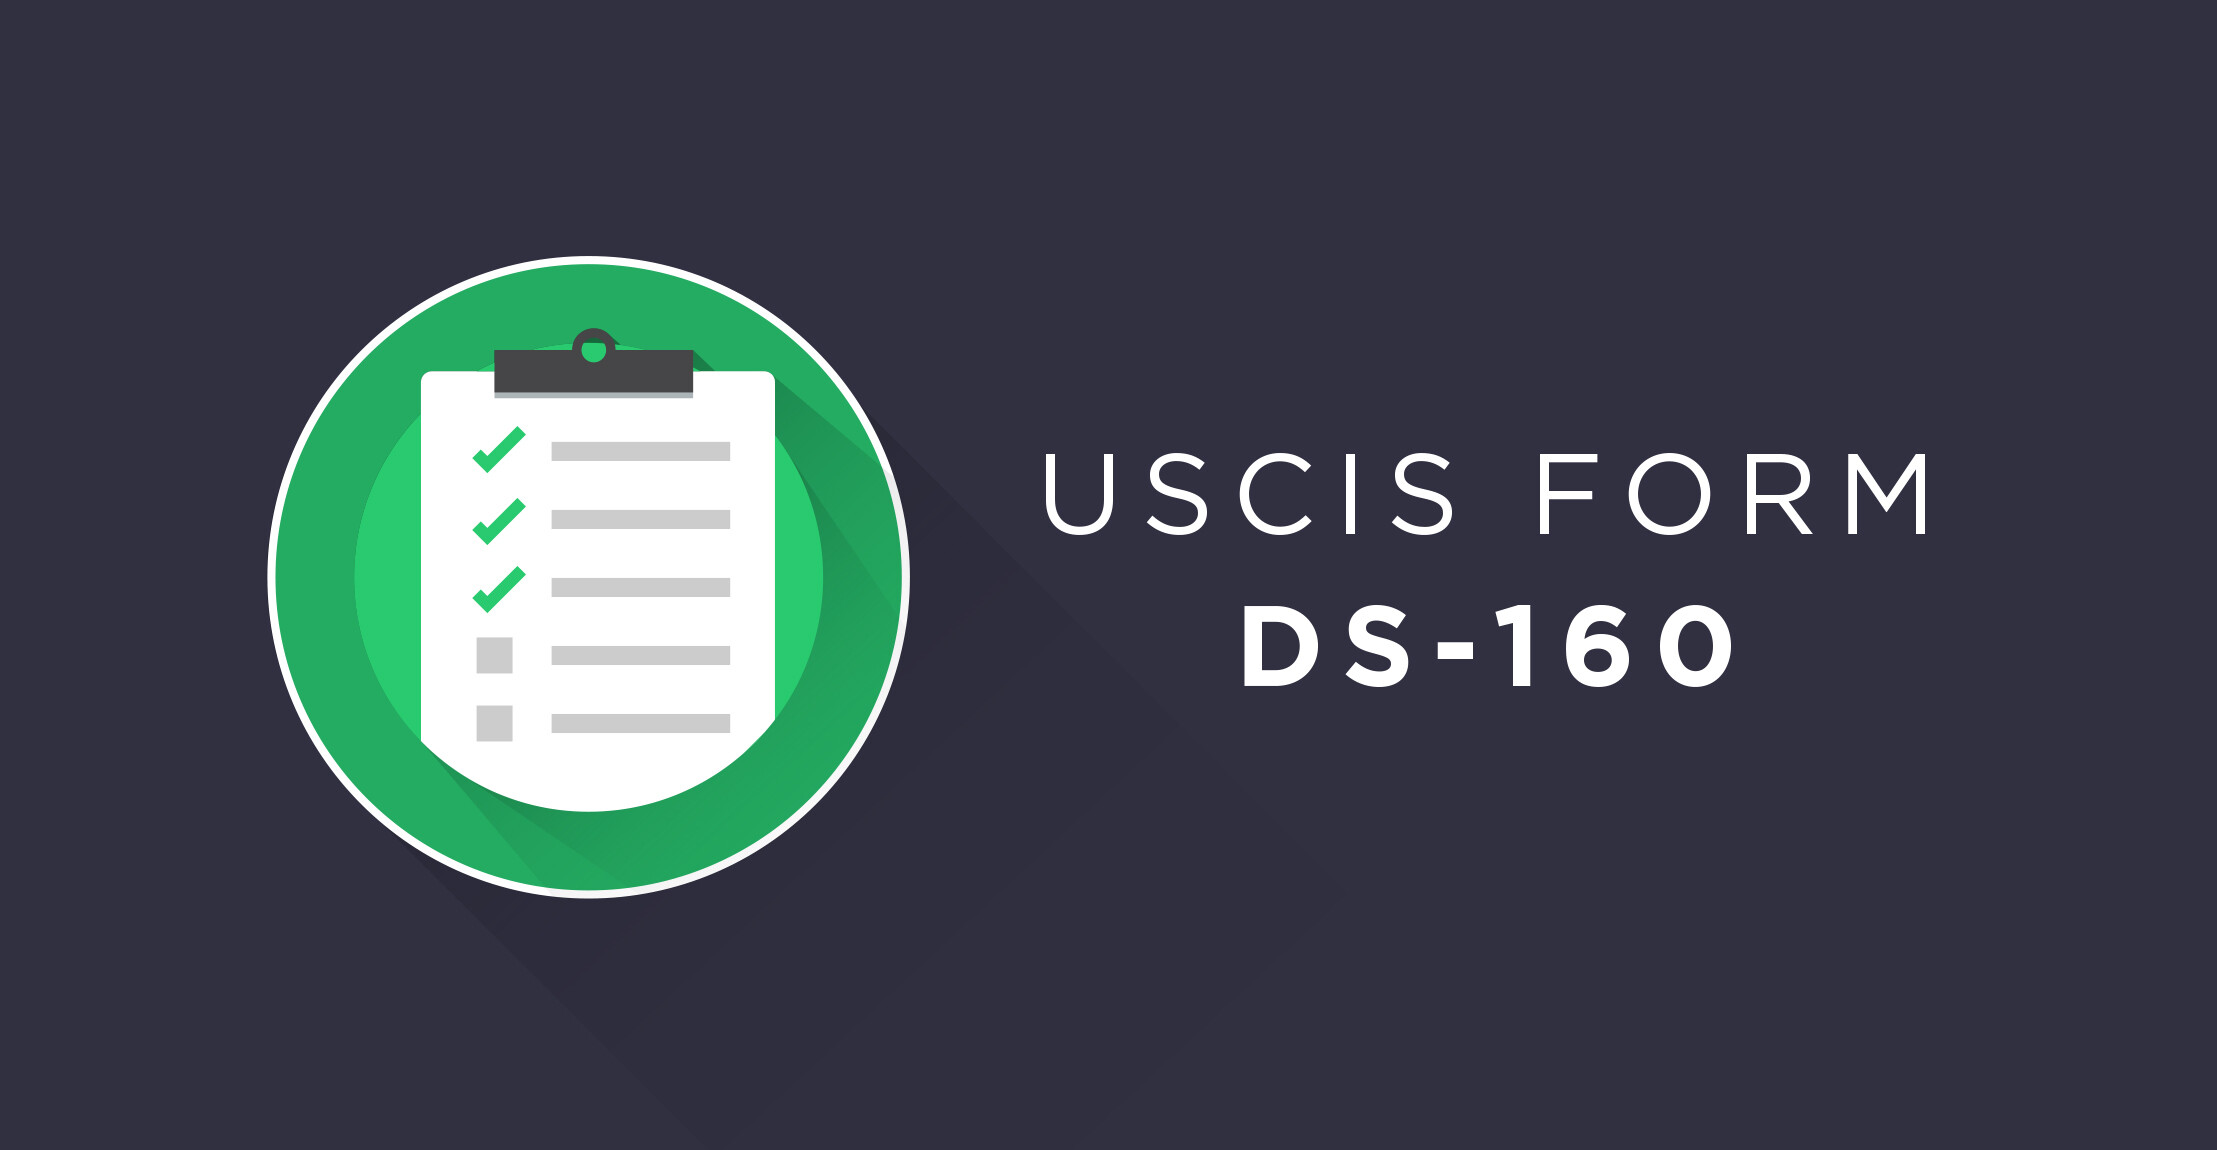 USCIS form DS 160